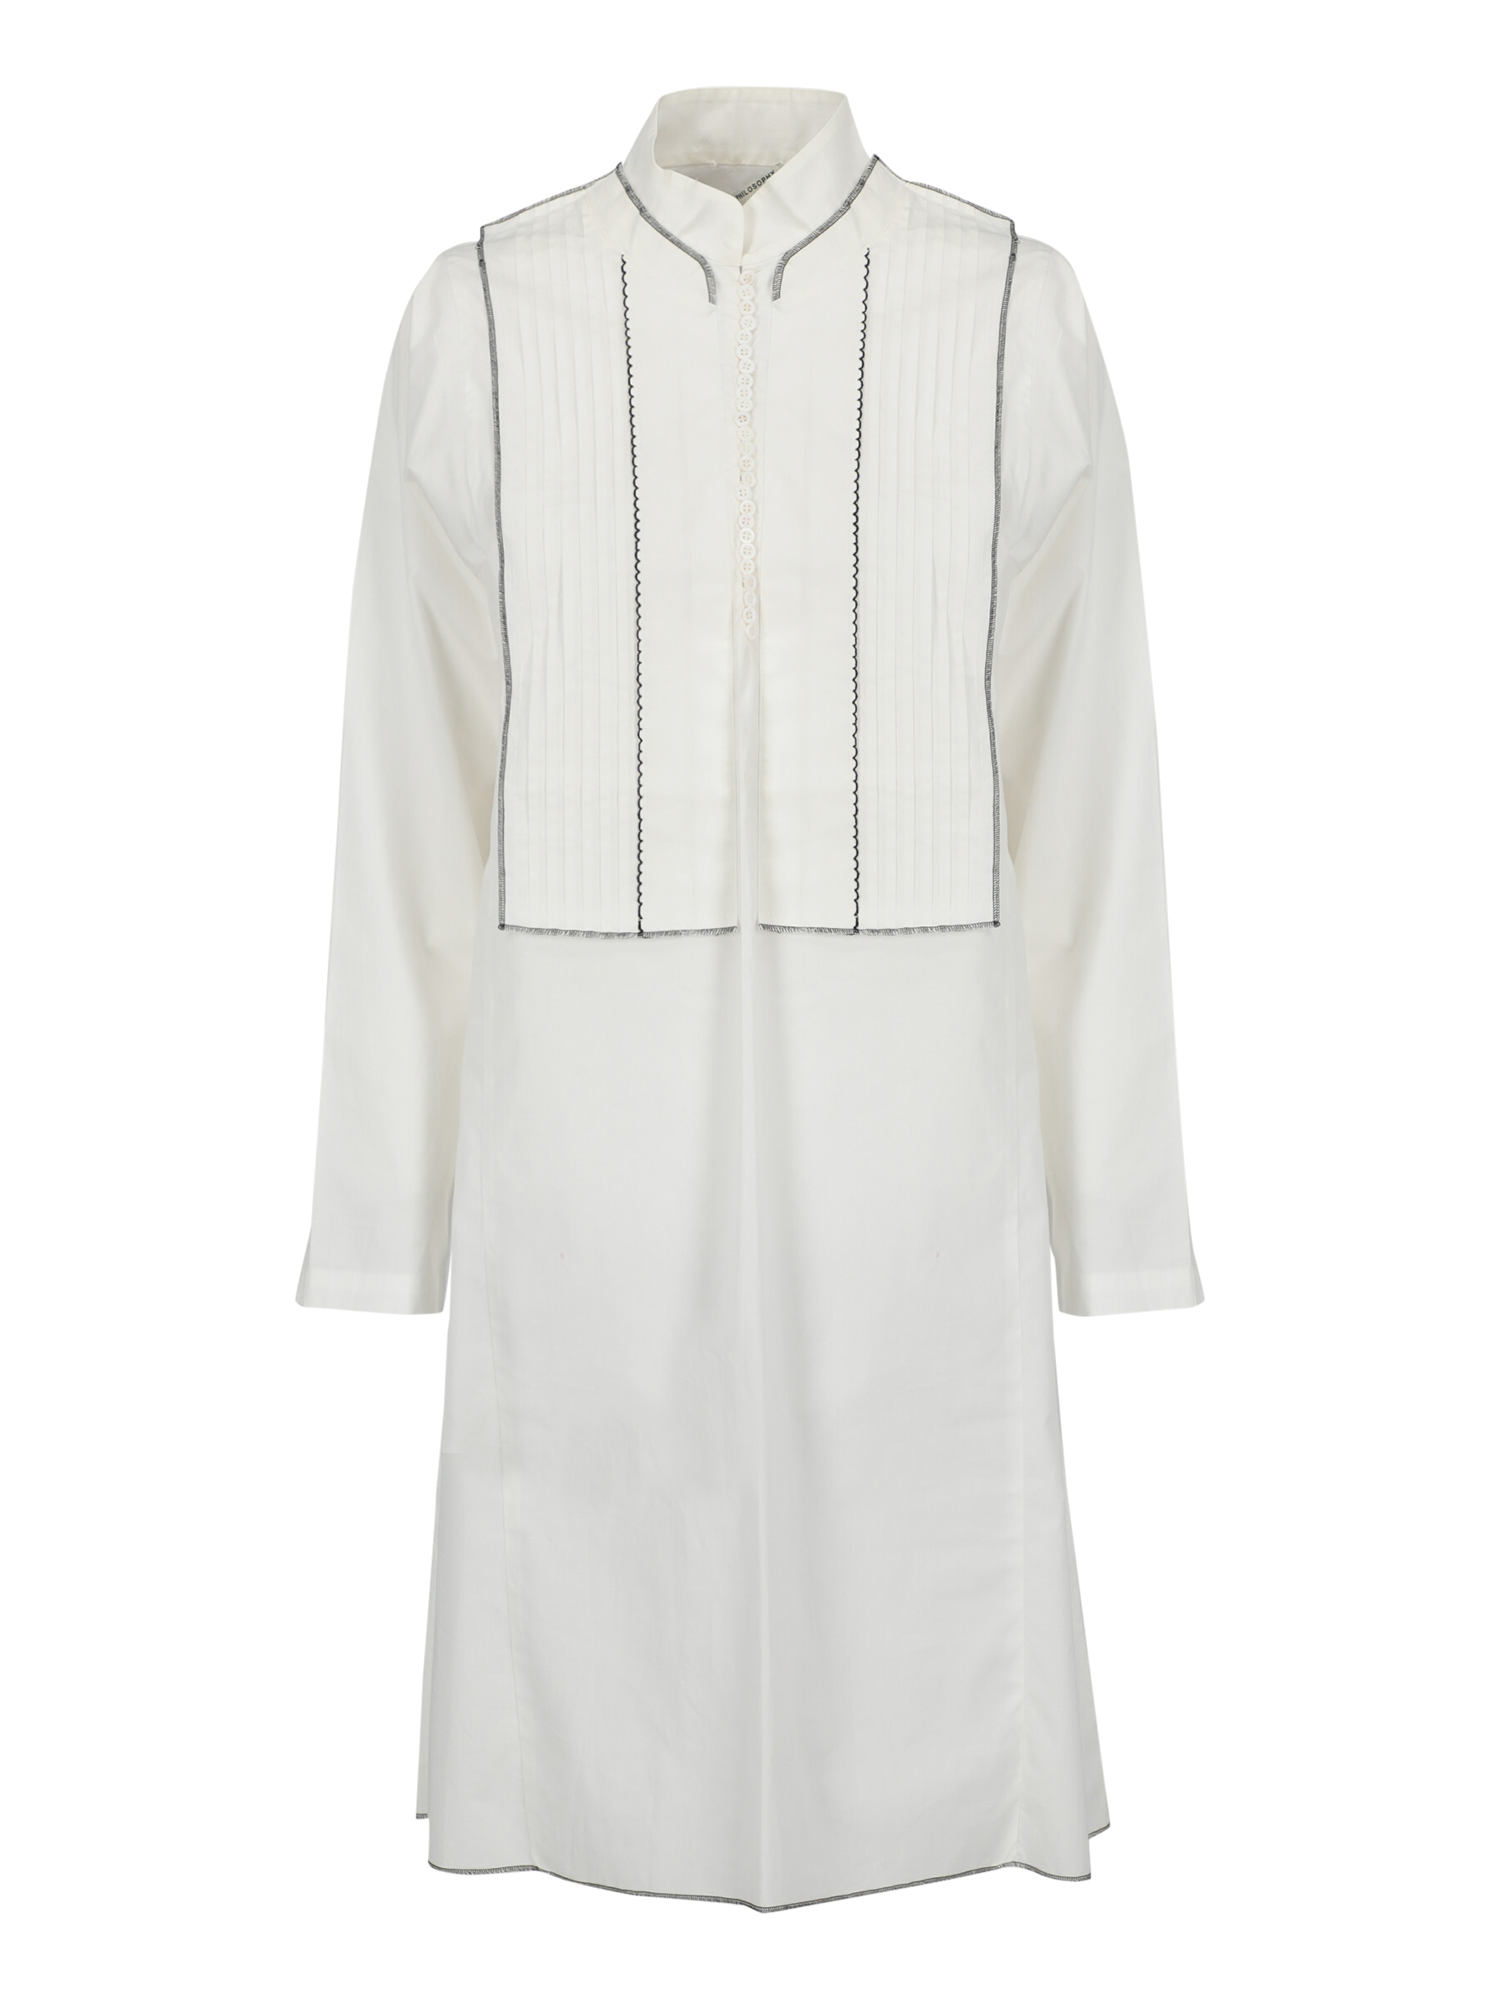 Robes Pour Femme - Philosophy - En Cotton White - Taille:  -